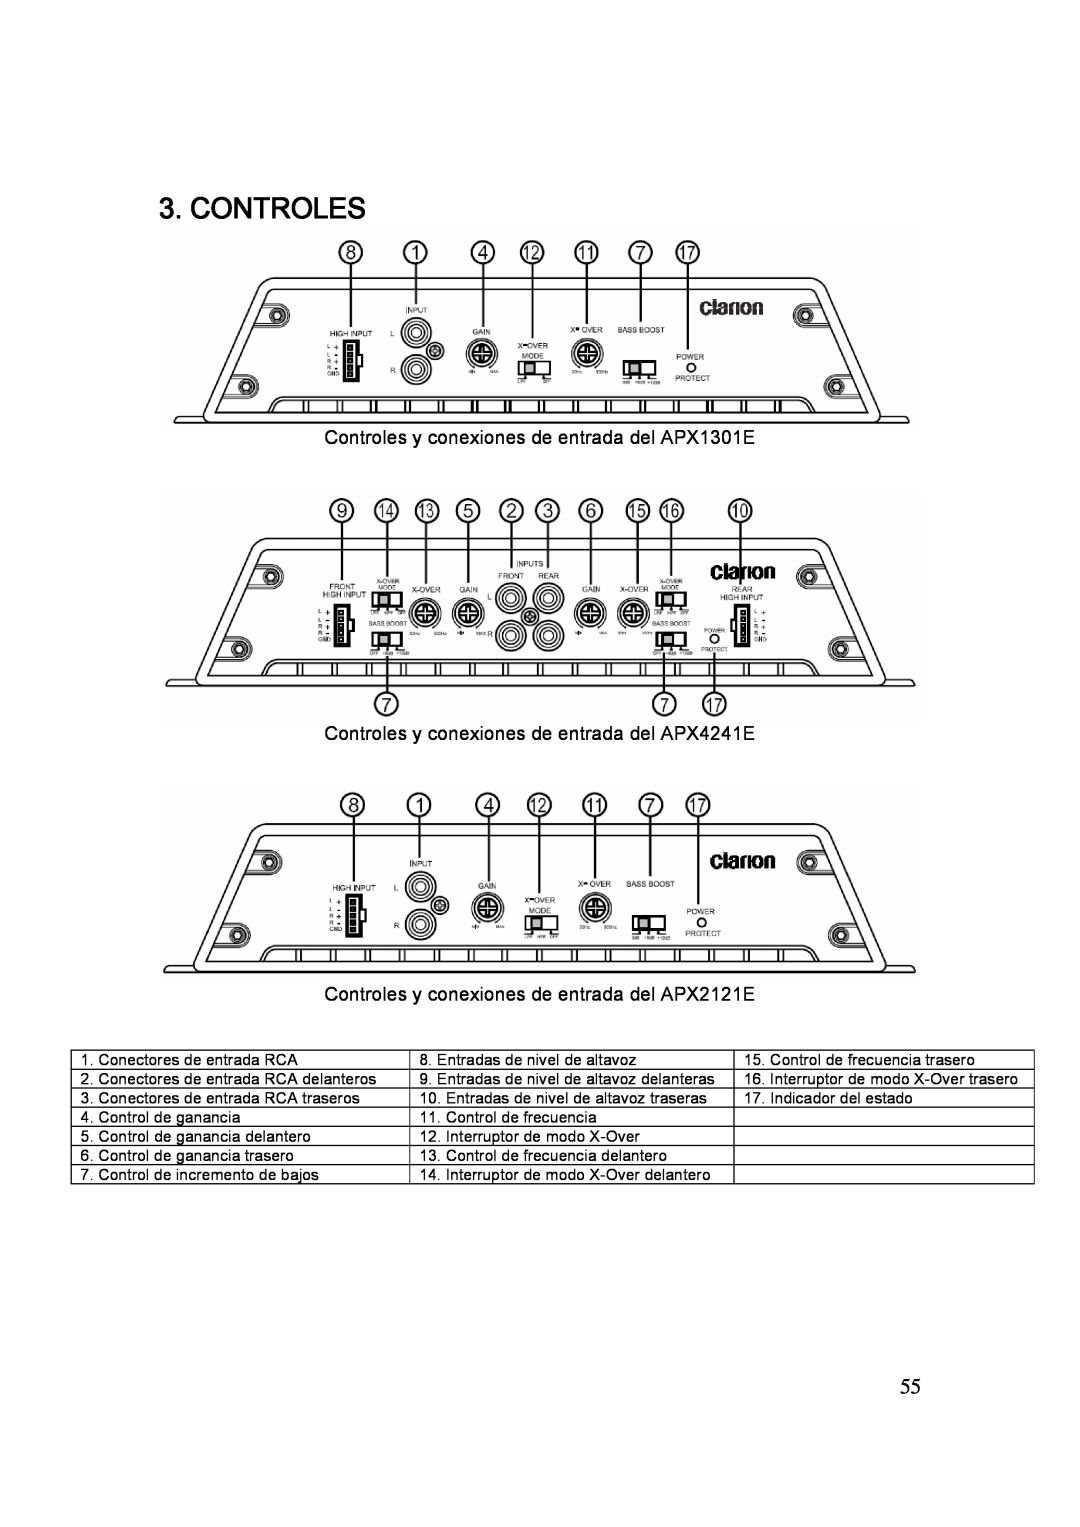 Clarion APX2121E Controles y conexiones de entrada del APX1301E, Controles y conexiones de entrada del APX4241E 